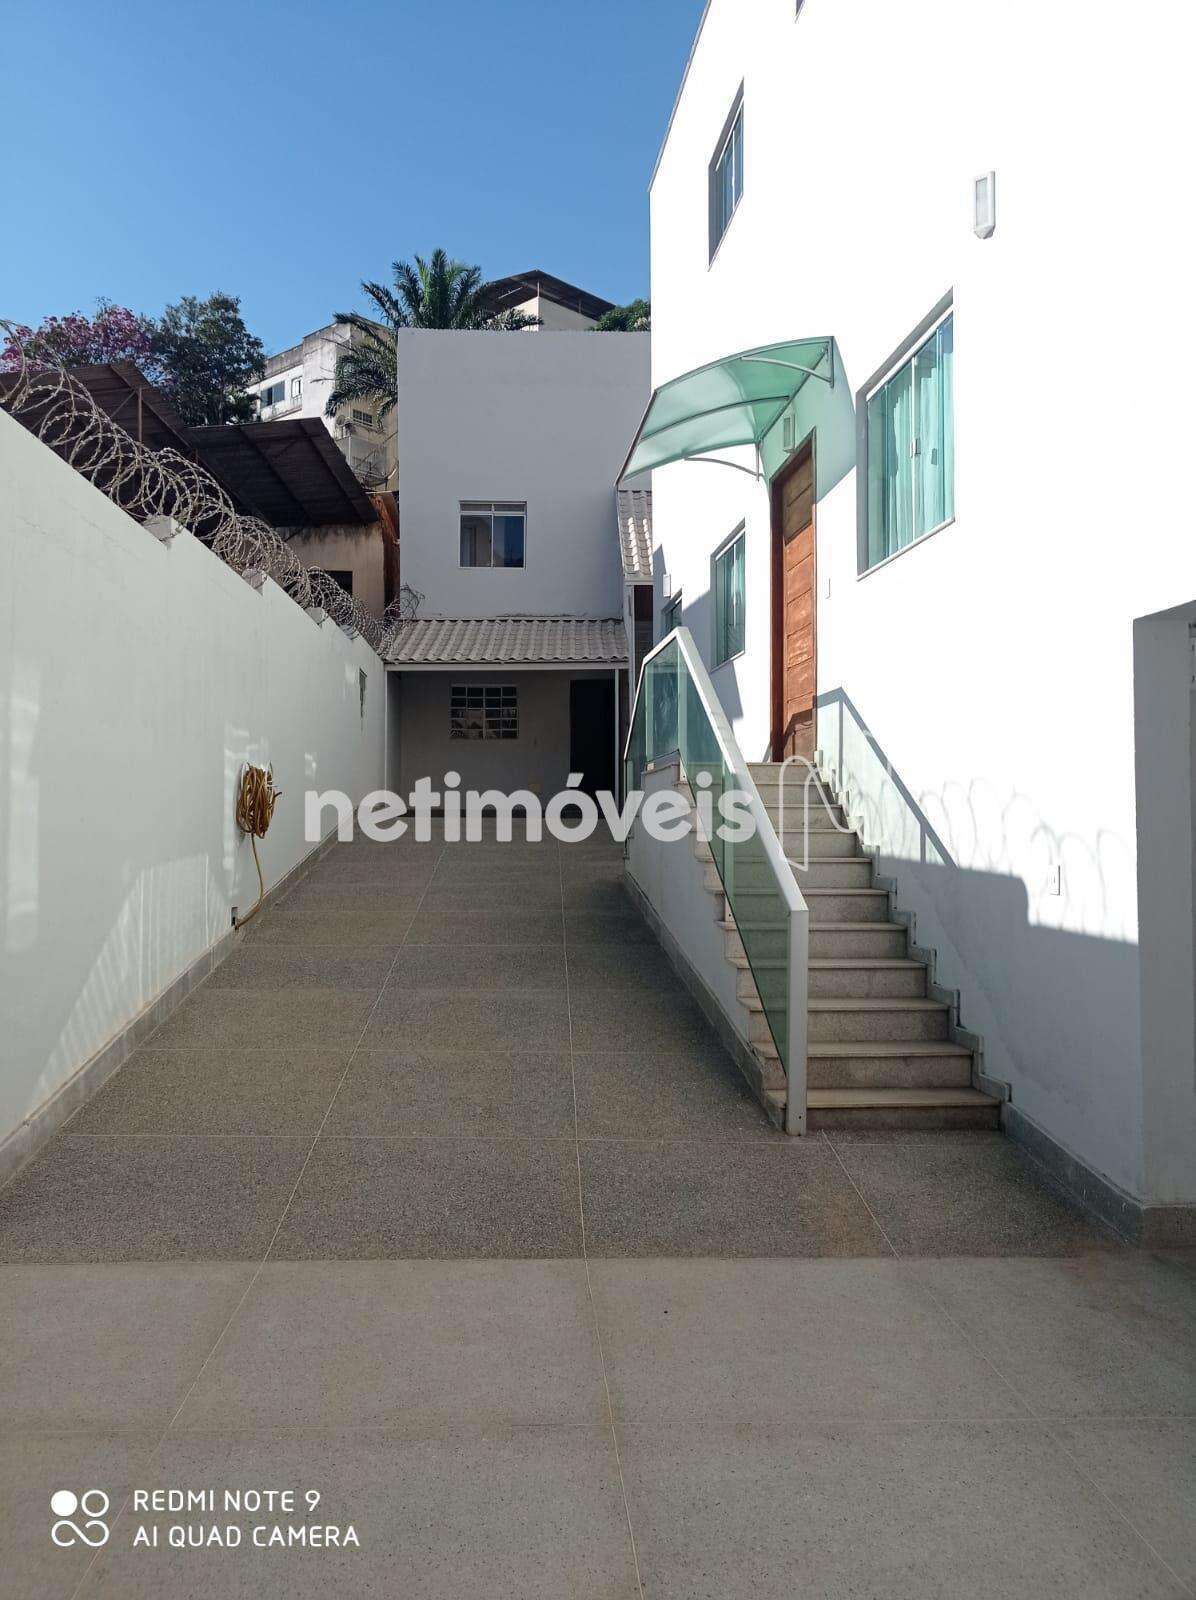 Casa à venda no Limoeiro: da921cbd-7-c91bd41e-0-whatsapp-image-2023-06-12-at-16.32.16.jpeg